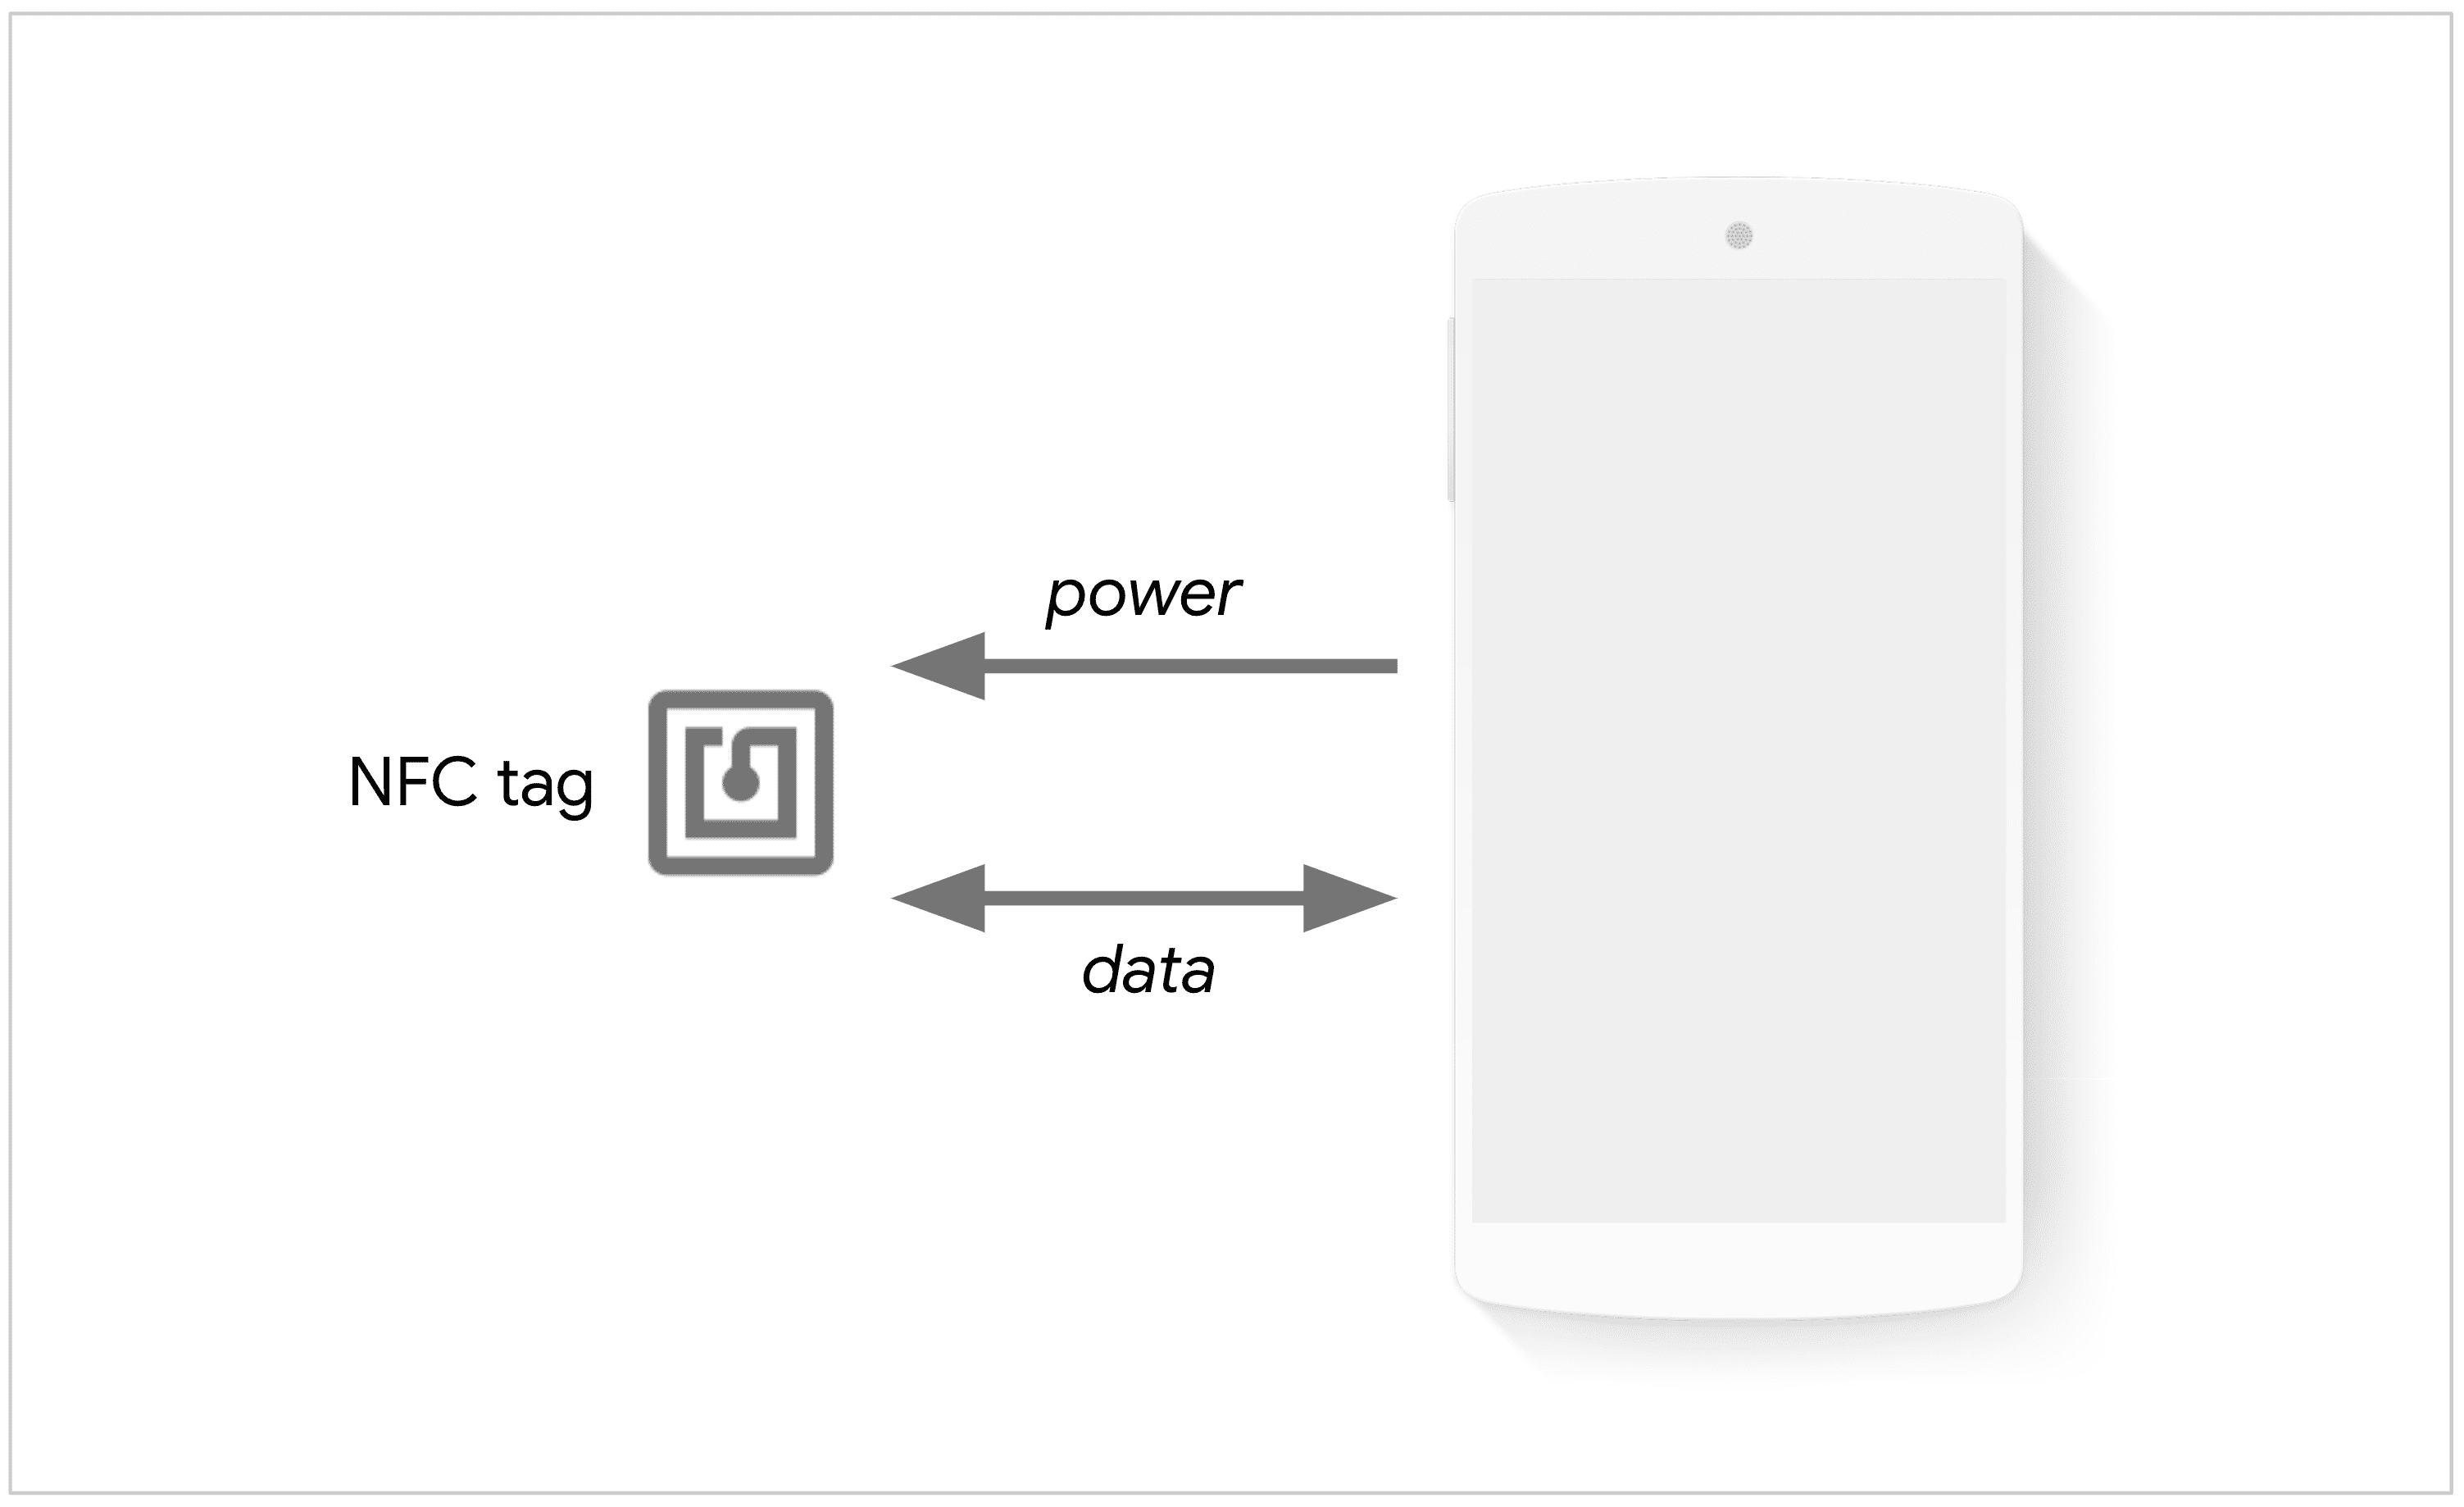 تلفن یک برچسب NFC را برای تبادل داده روشن می کند